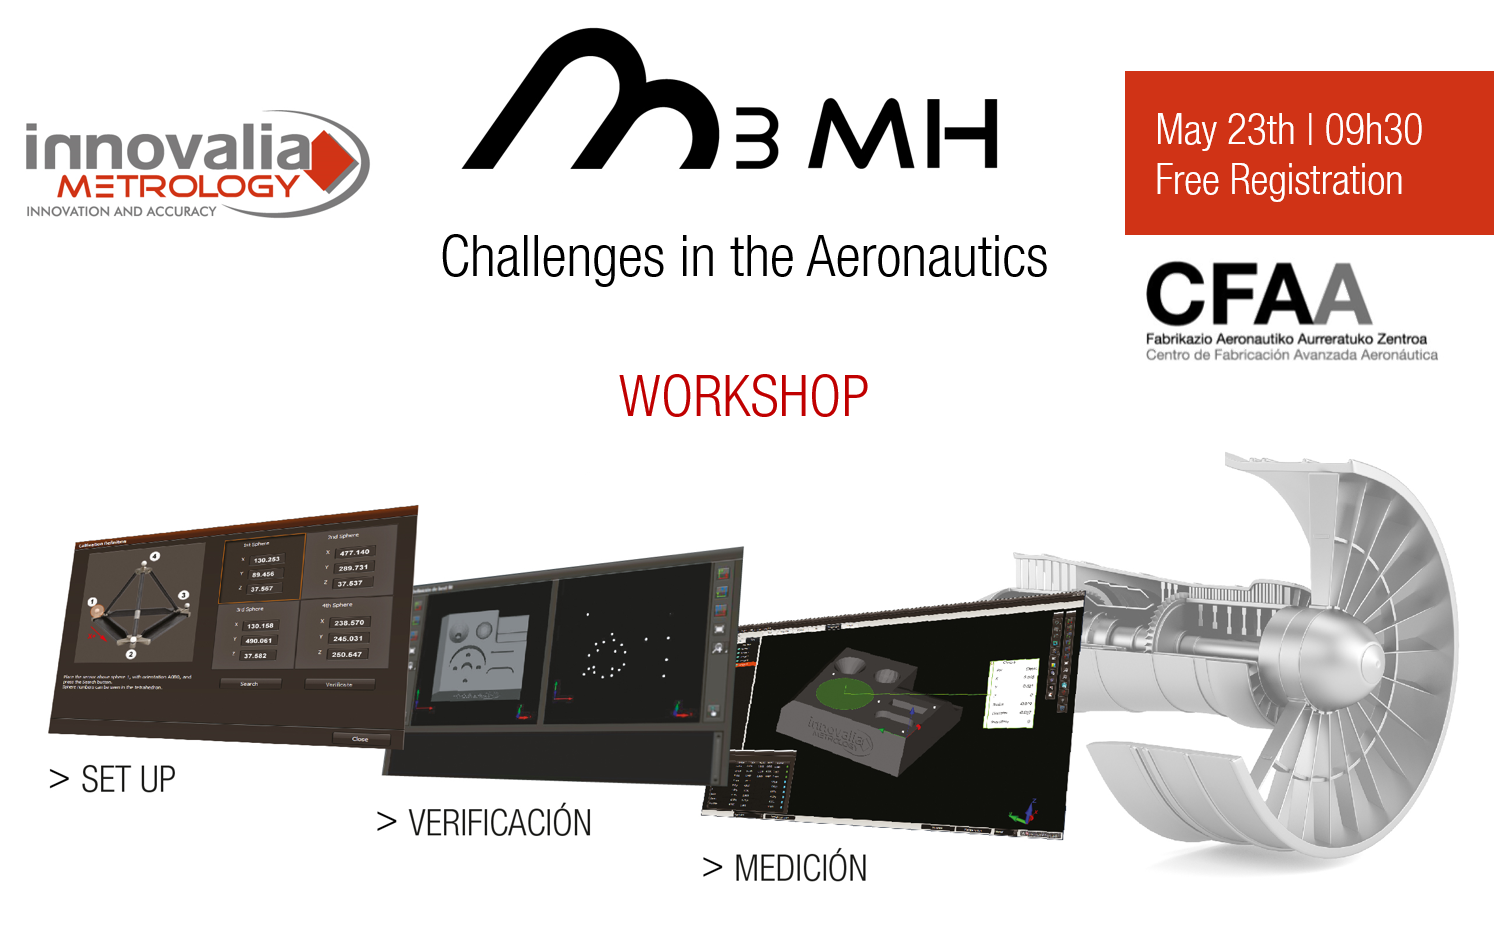 Innovalia Metrology lädt Sie am 23. Mai ein, neue Technologien zu entdecken, um die Herausforderungen der Luftfahrtbranche in einem einzigartigen Workshop in CFAA zu meistern.